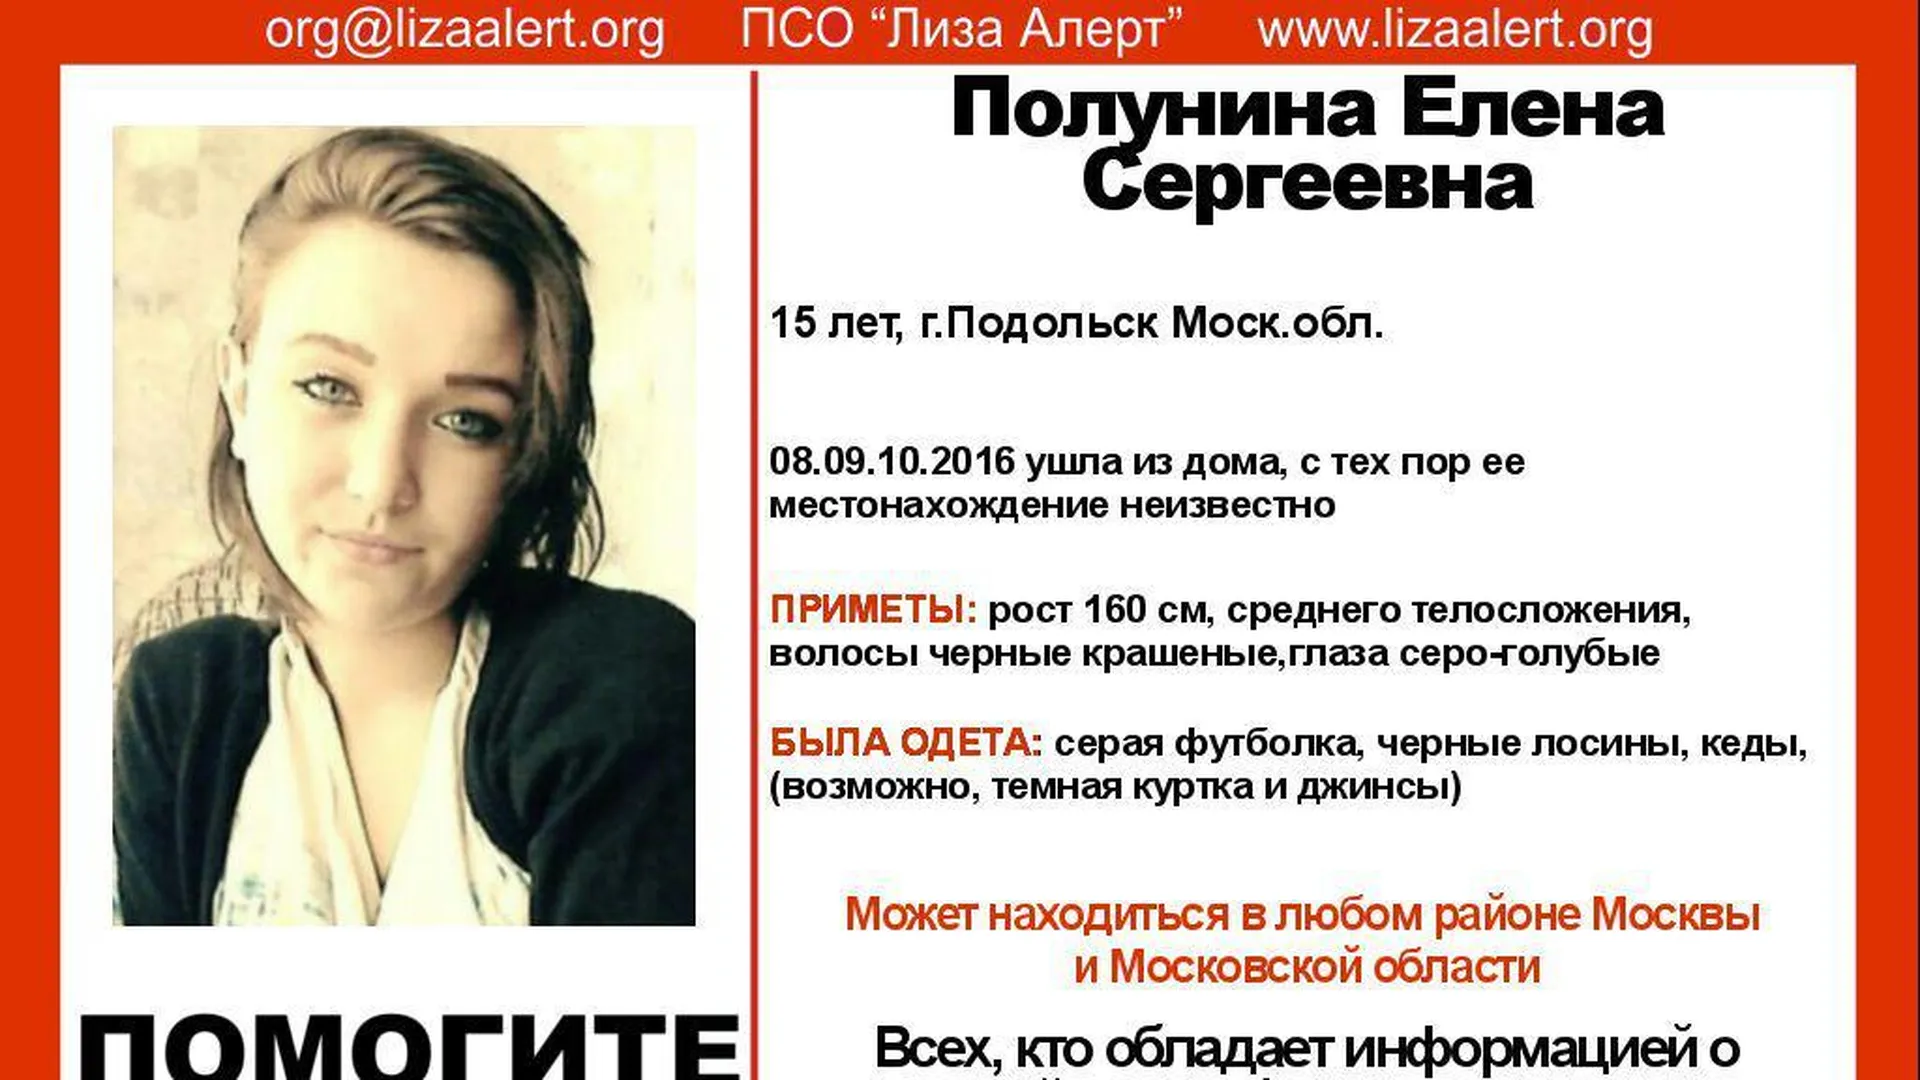 Пятнадцатилетнего подростка ищут в течение трех недель в Подольске